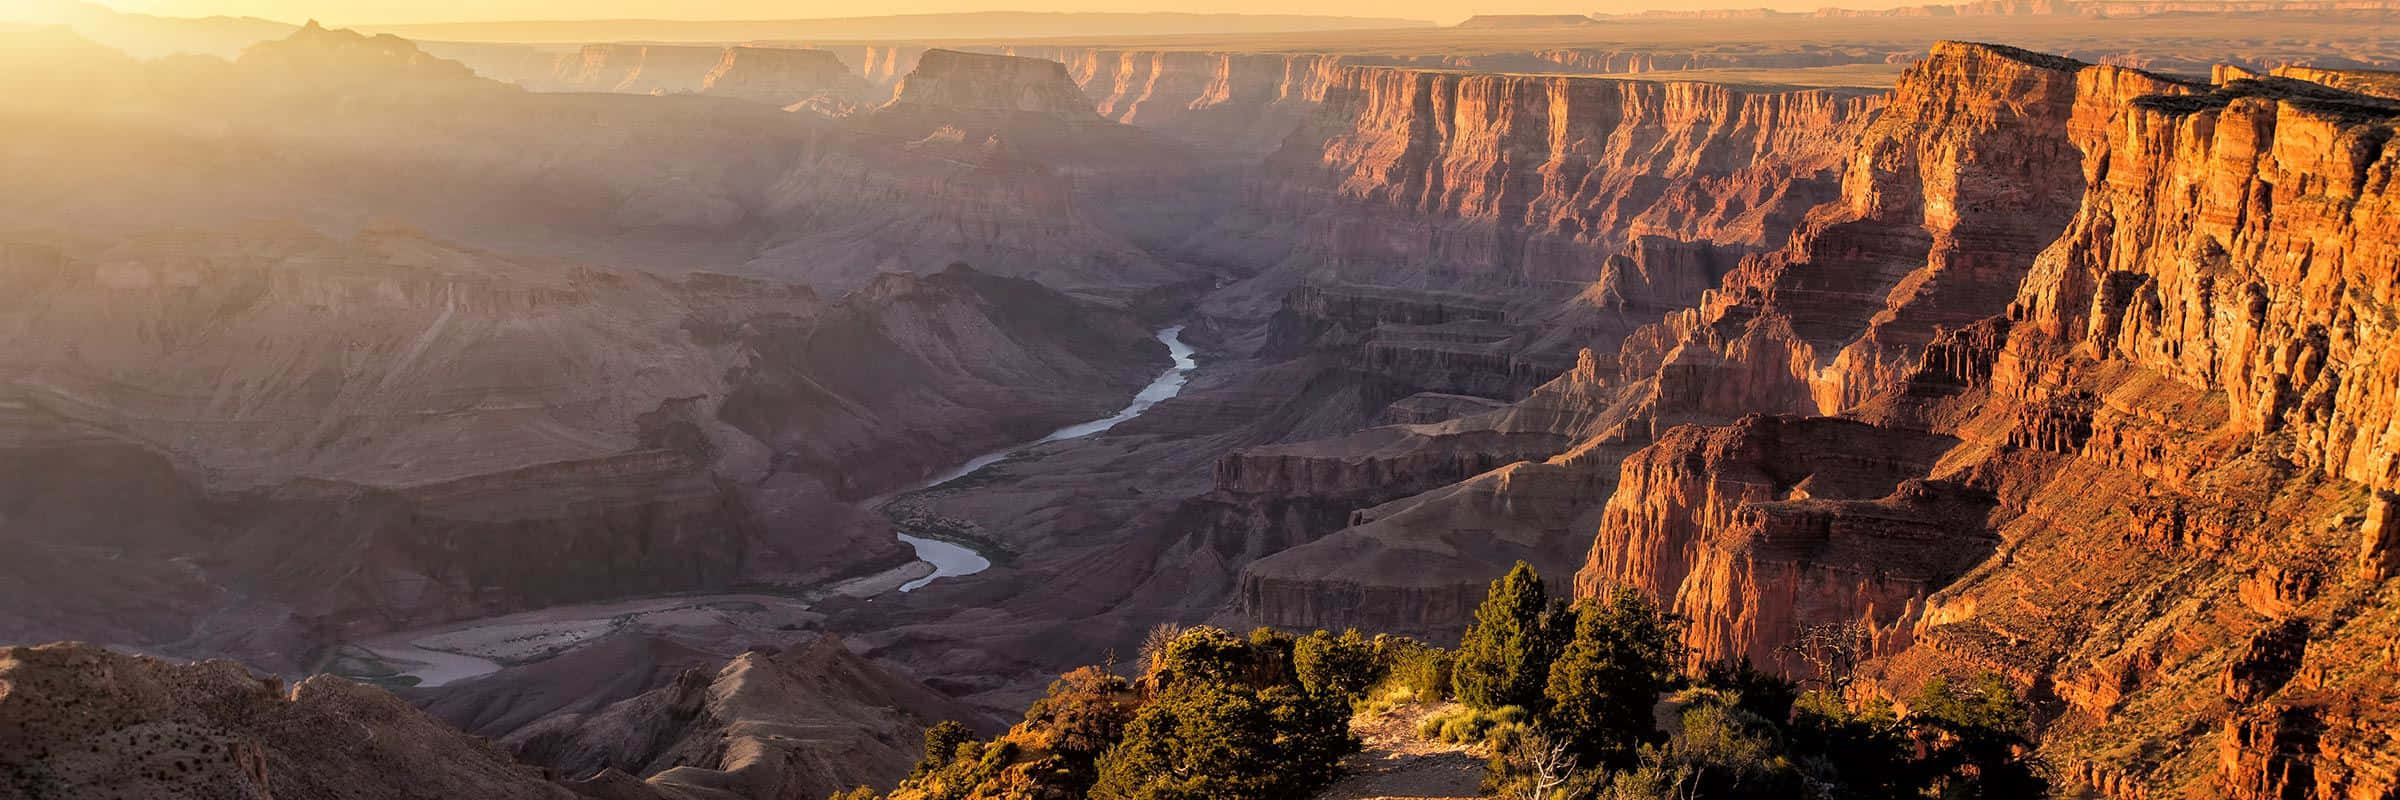 Ilbellissimo Paesaggio Accidentato Del Grand Canyon